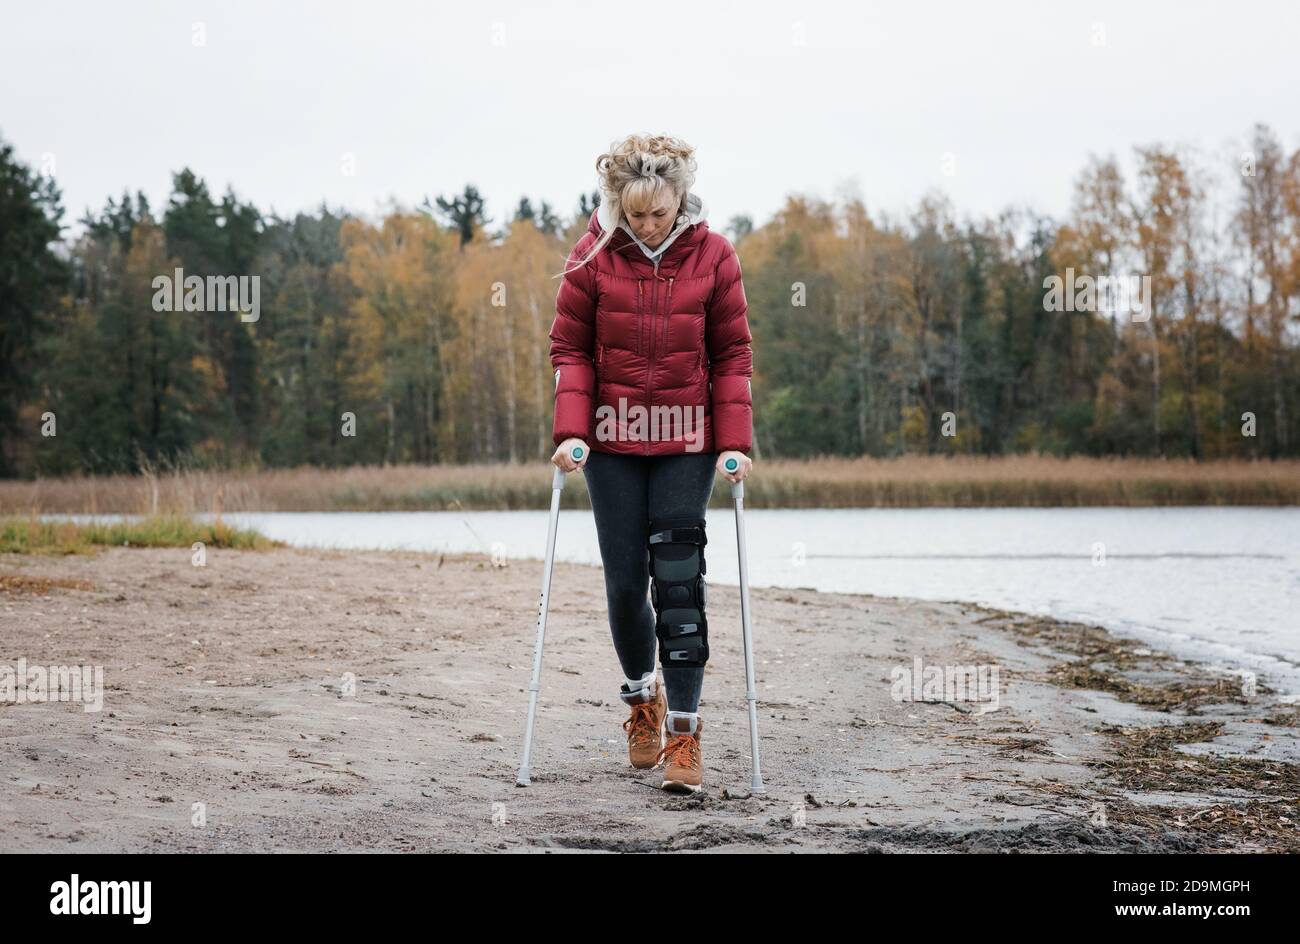 Verletzte Frau, die mit Krücken am Strand geht und nachdenklich aussieht  Stockfotografie - Alamy